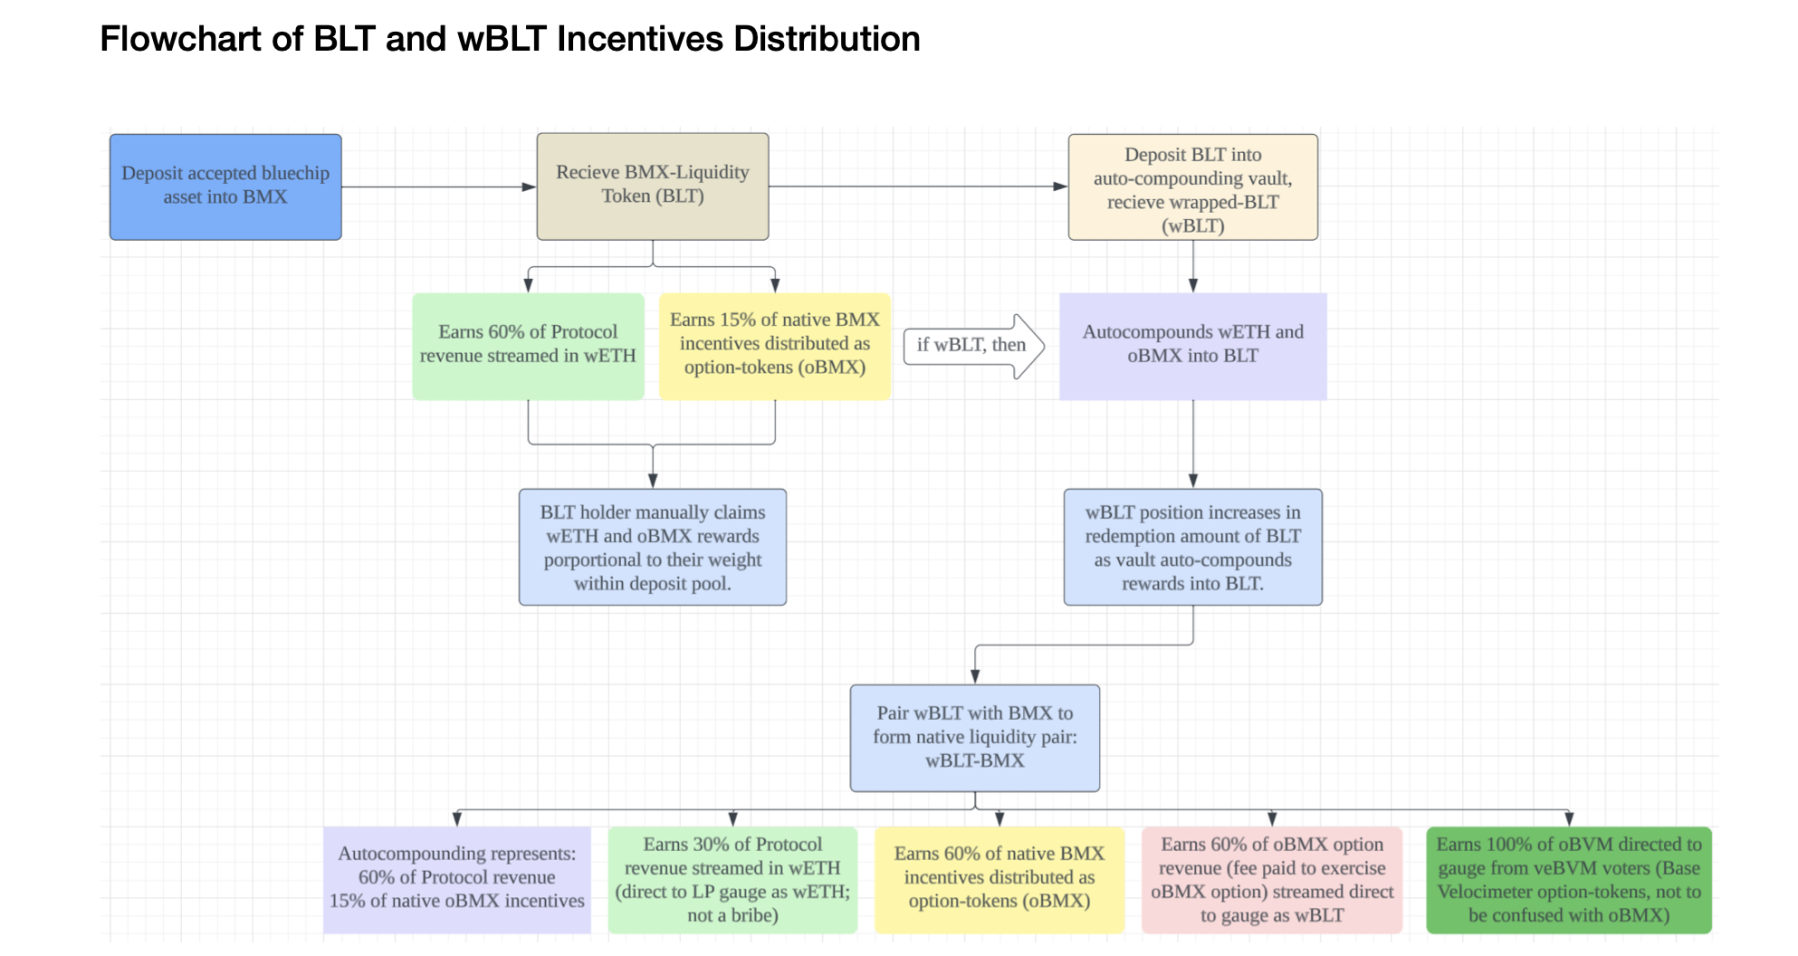 BLT/wBLT distribution flowchart